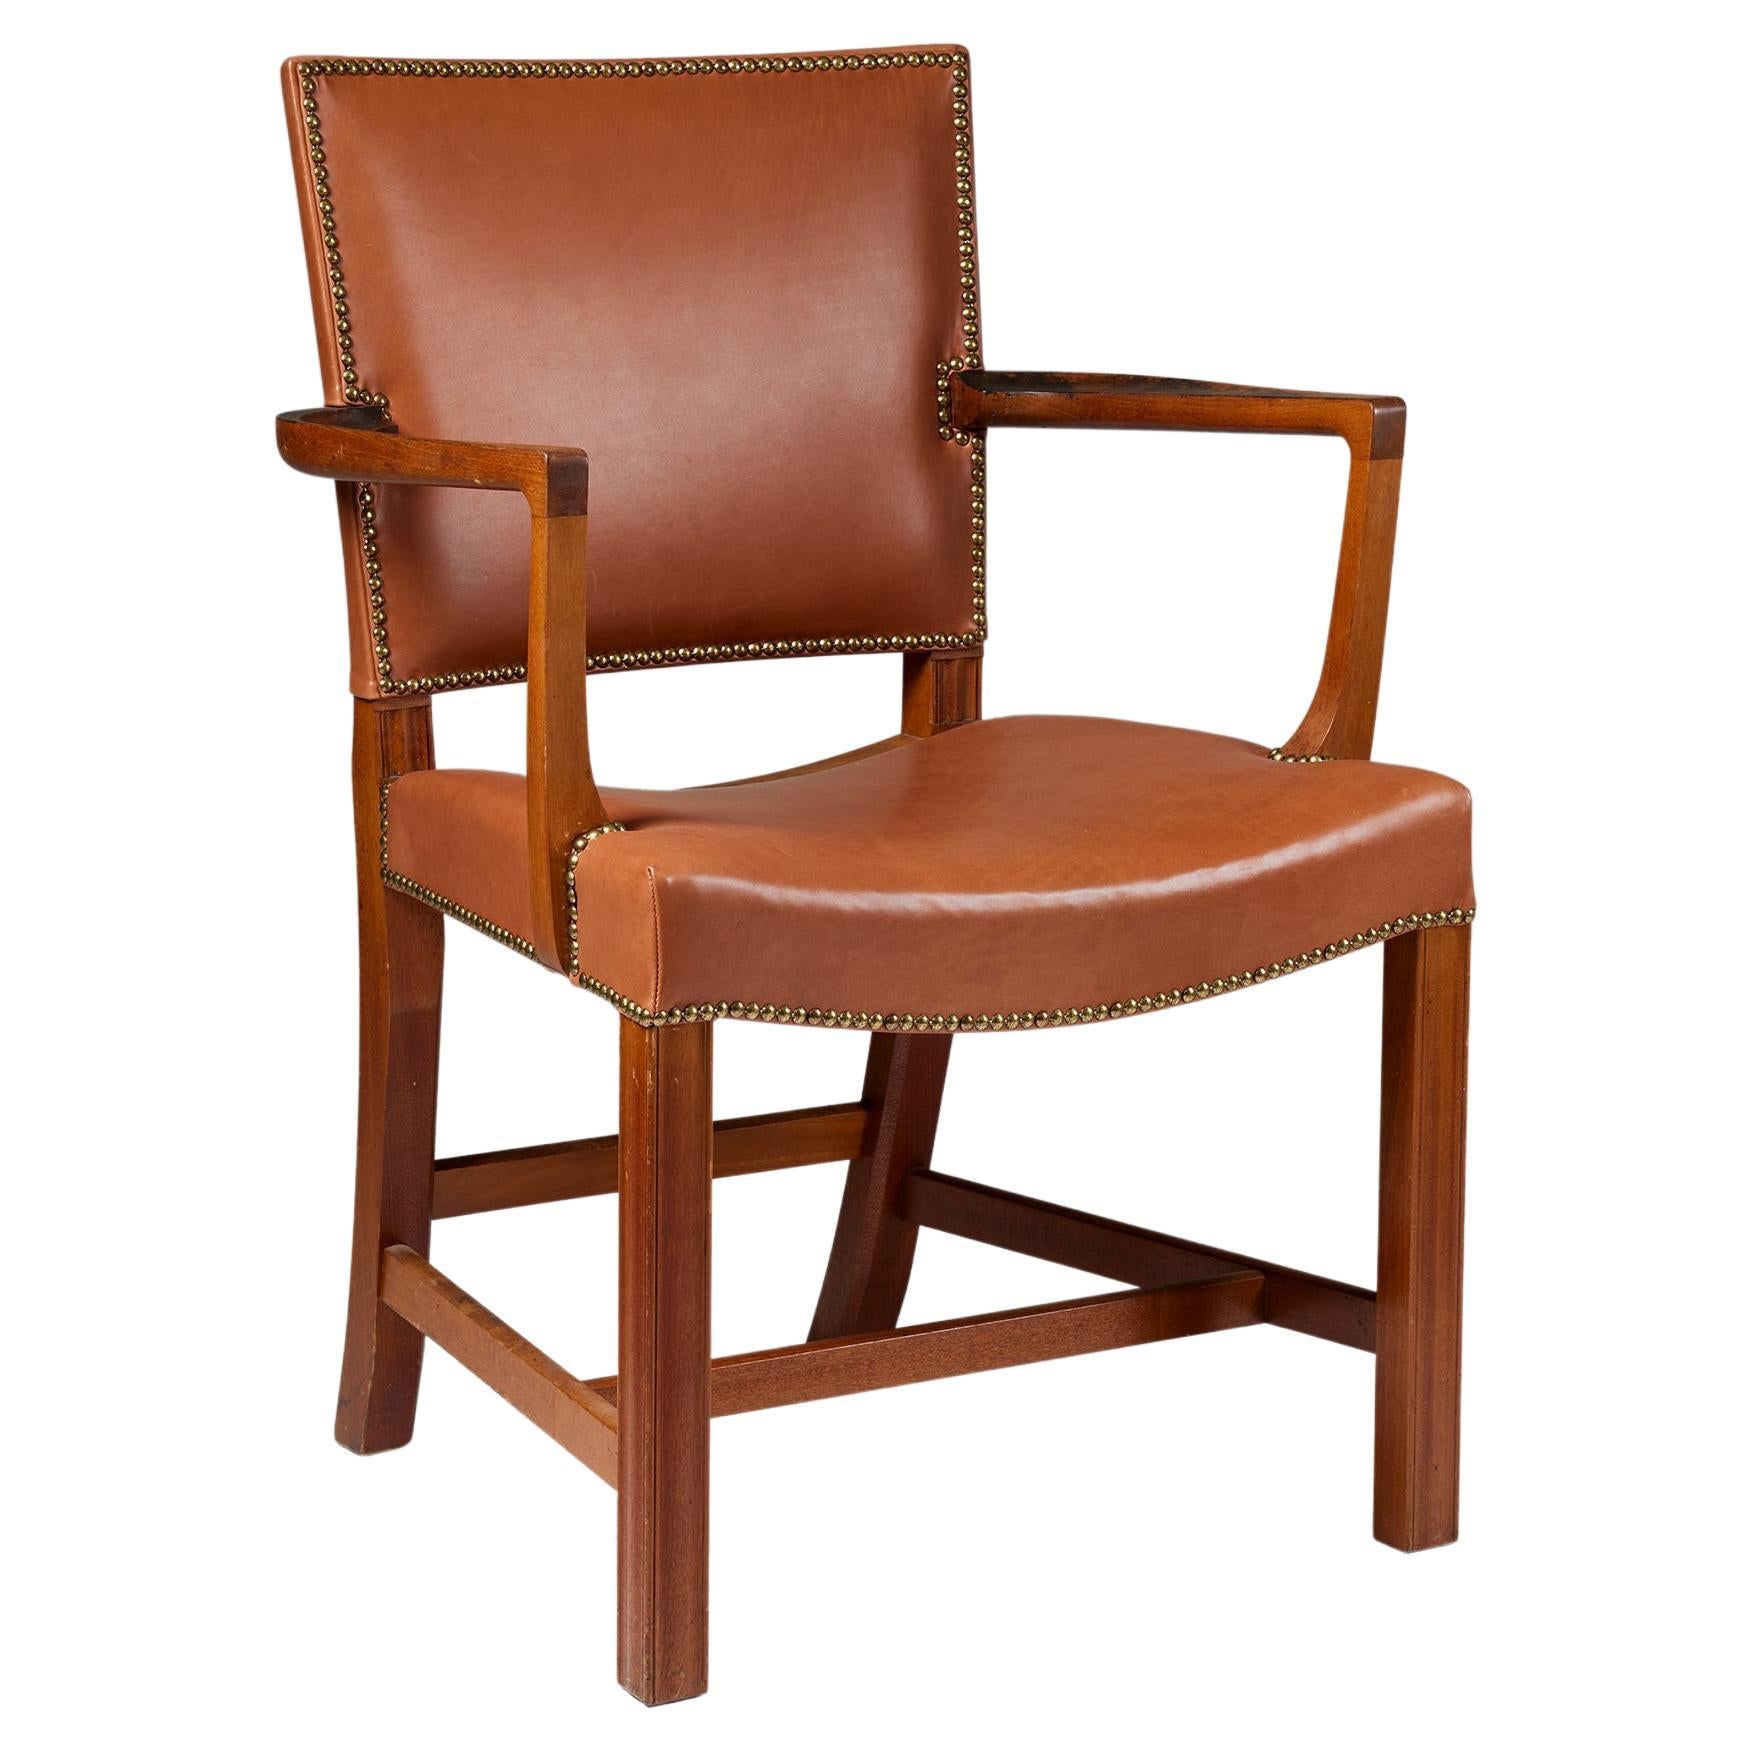 Fauteuil "The Red Chair" Modèle 3758a Designé par Kaare Klint pour Rud, Rasmussen